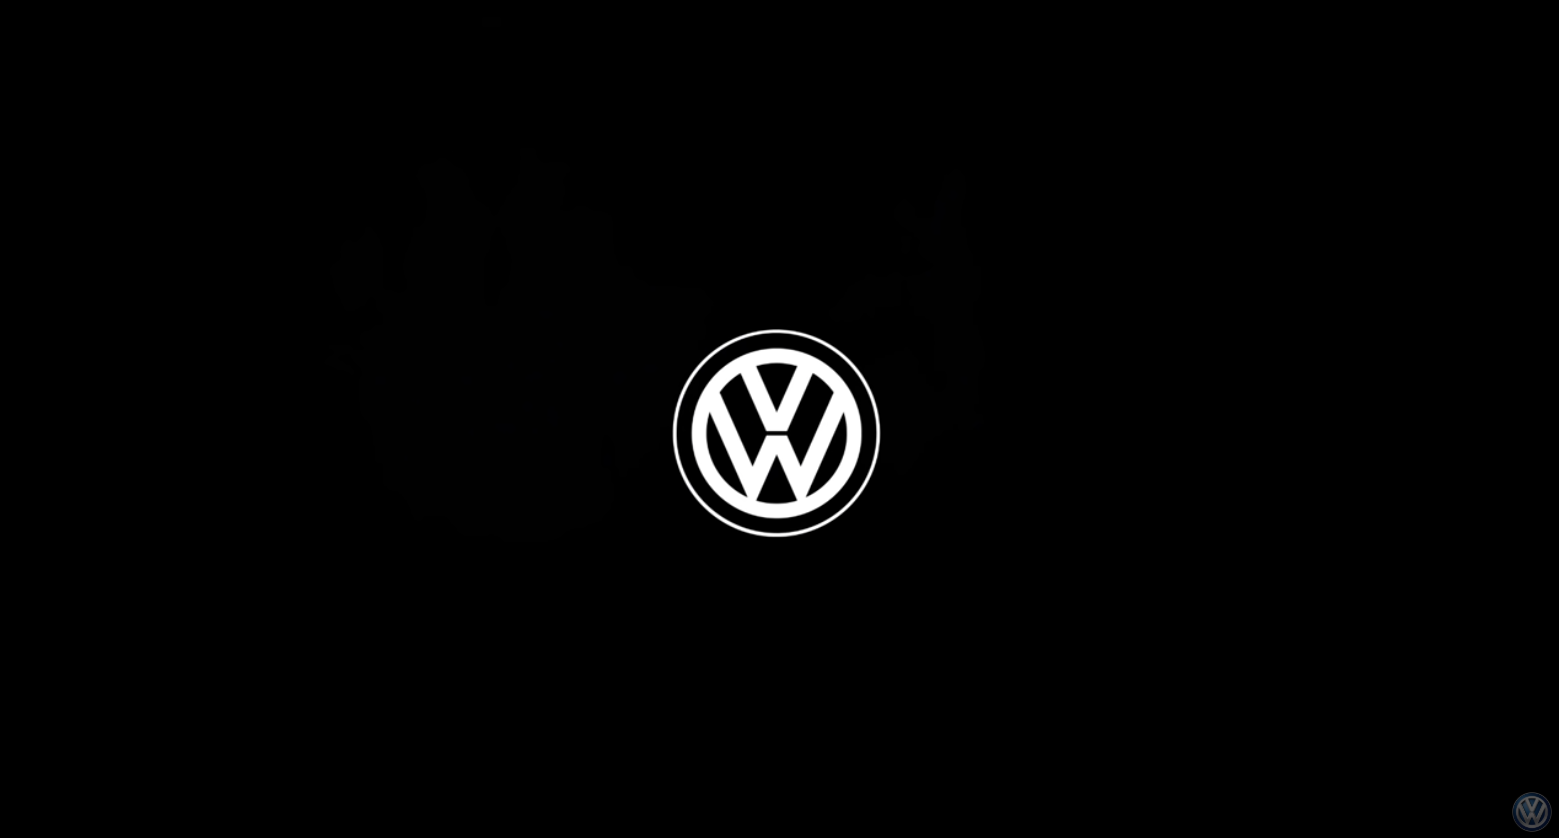 Иконка на обои телефона. Заставка Фольксваген. Фольксваген на черном фоне. Фольксваген лого. Значок Volkswagen на черном фоне.